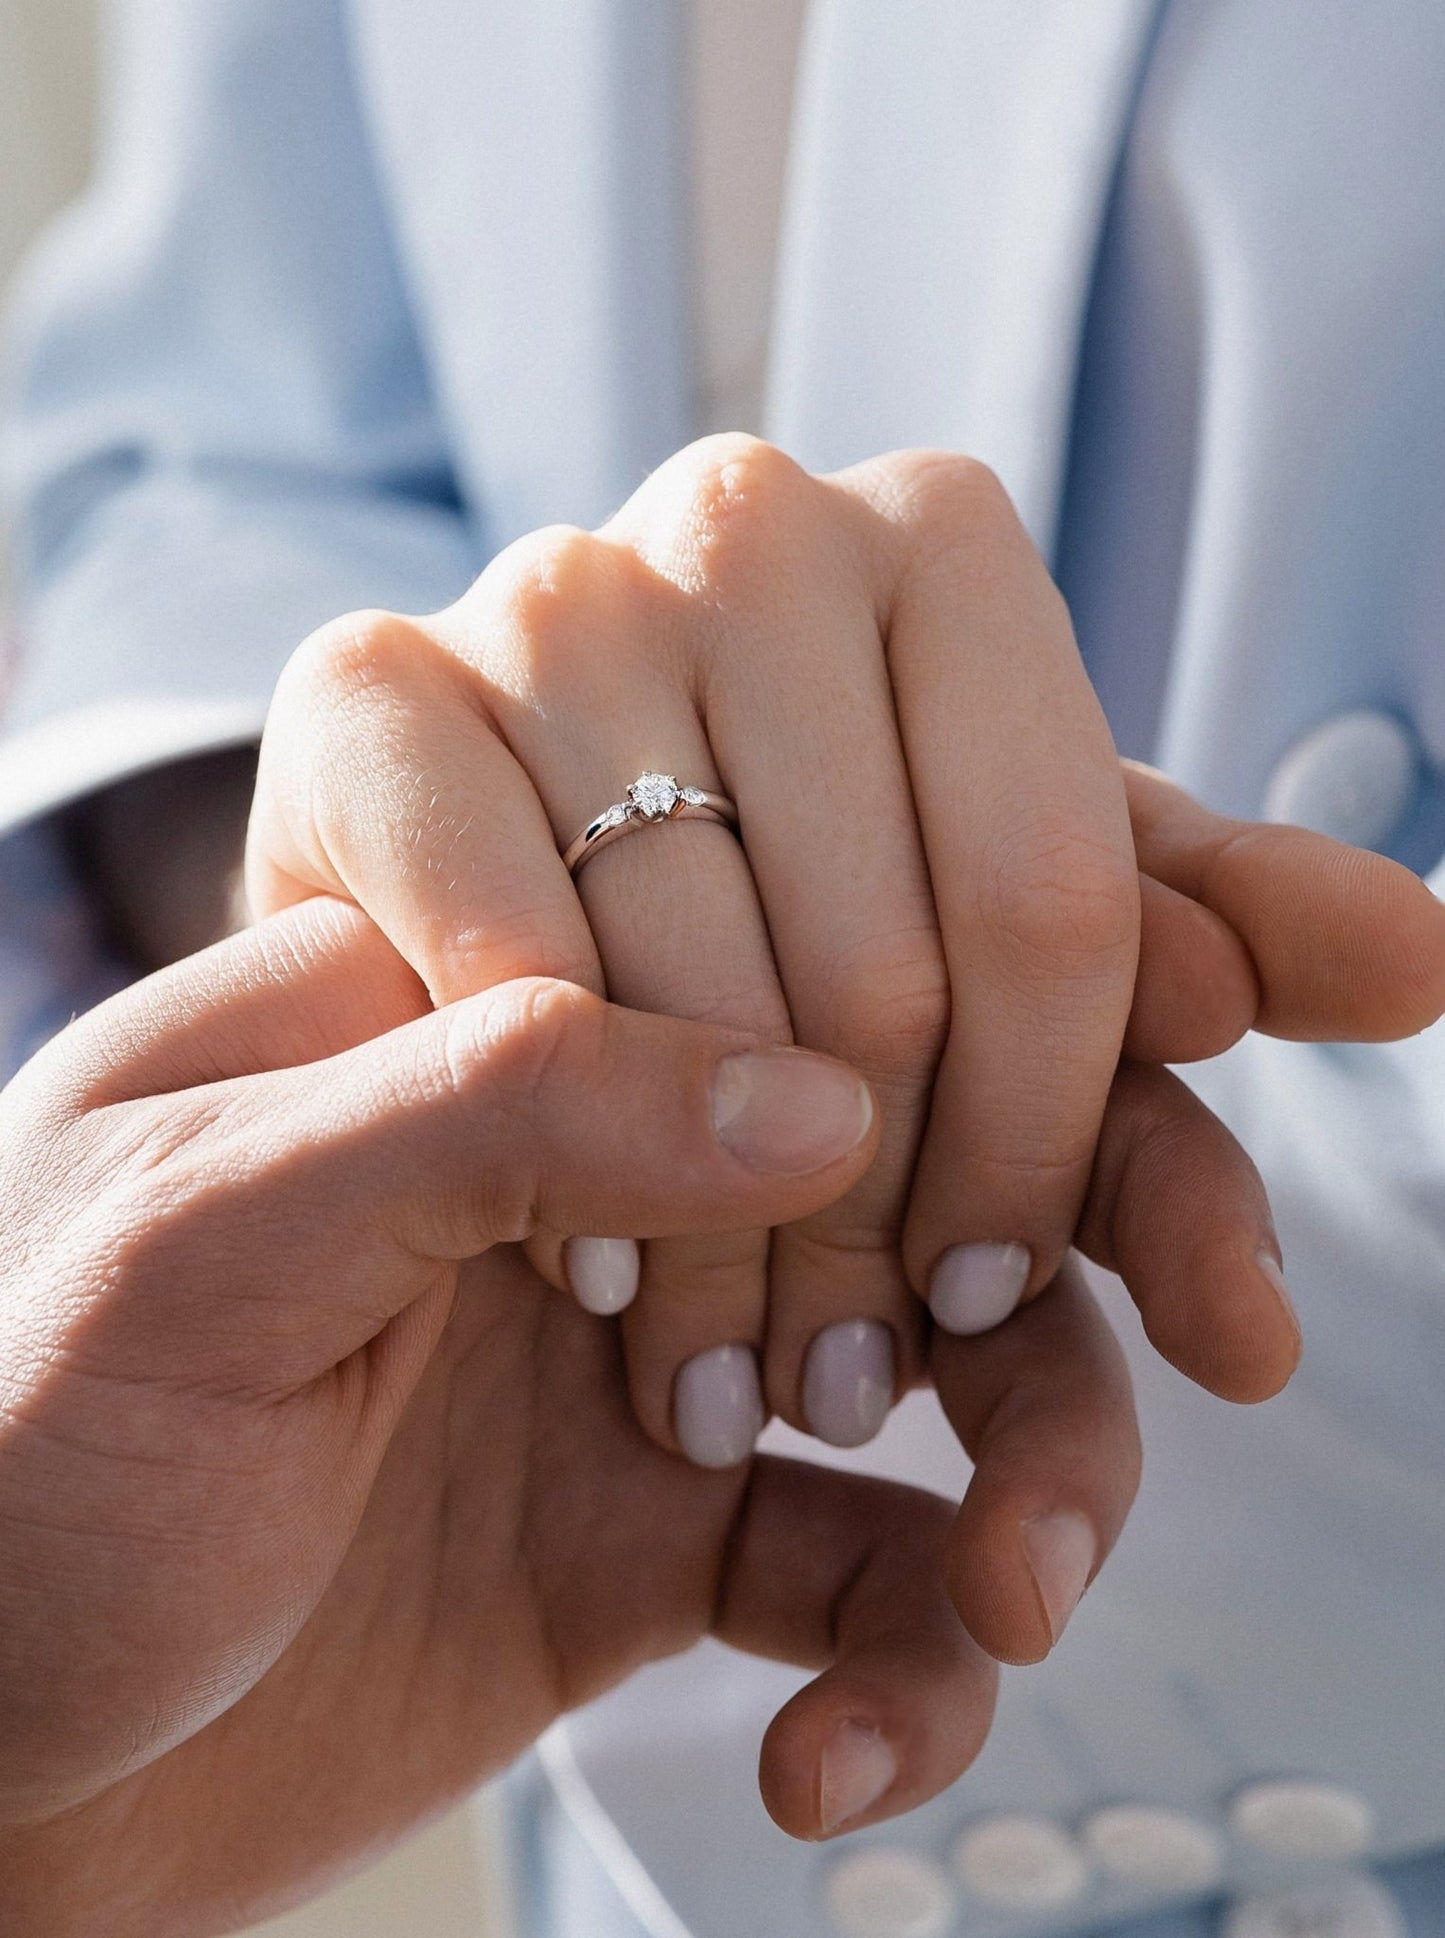 Diamond engagement ring - escorialjewelry